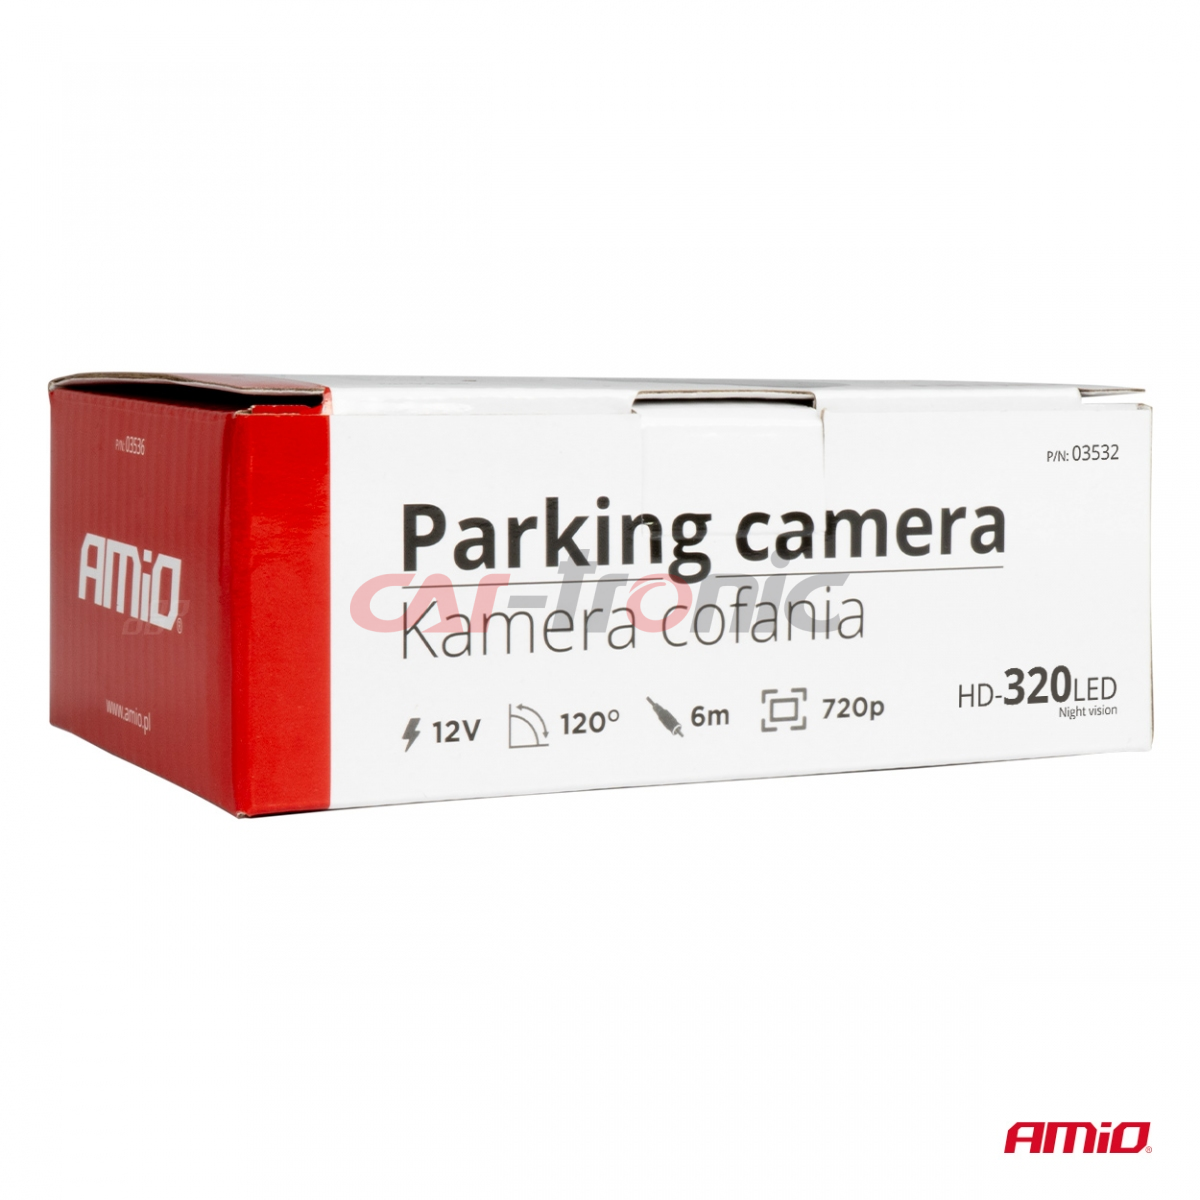 Kamera cofania parkowania HD-320 LED 12v 720p AMIO-03532